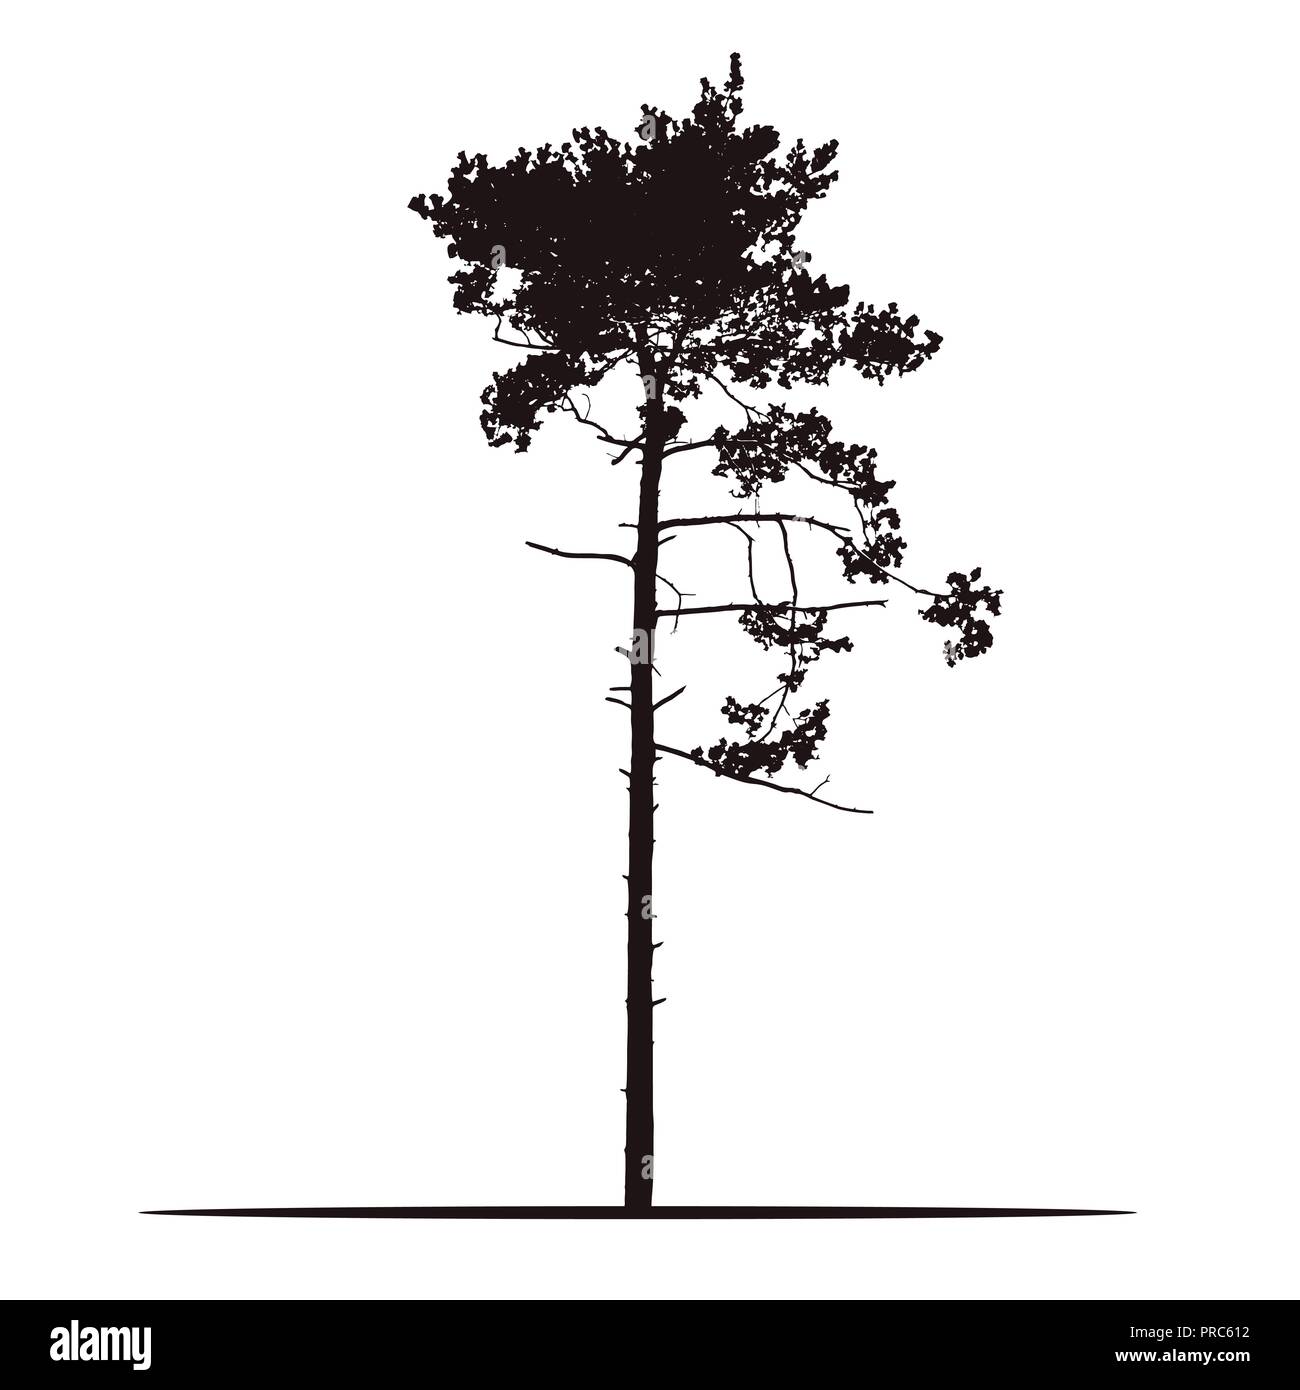 Realistische Silhouette des Baums - Kiefer mit Filialen und Nadel-isolierte Vektor auf weißem Hintergrund Stock Vektor